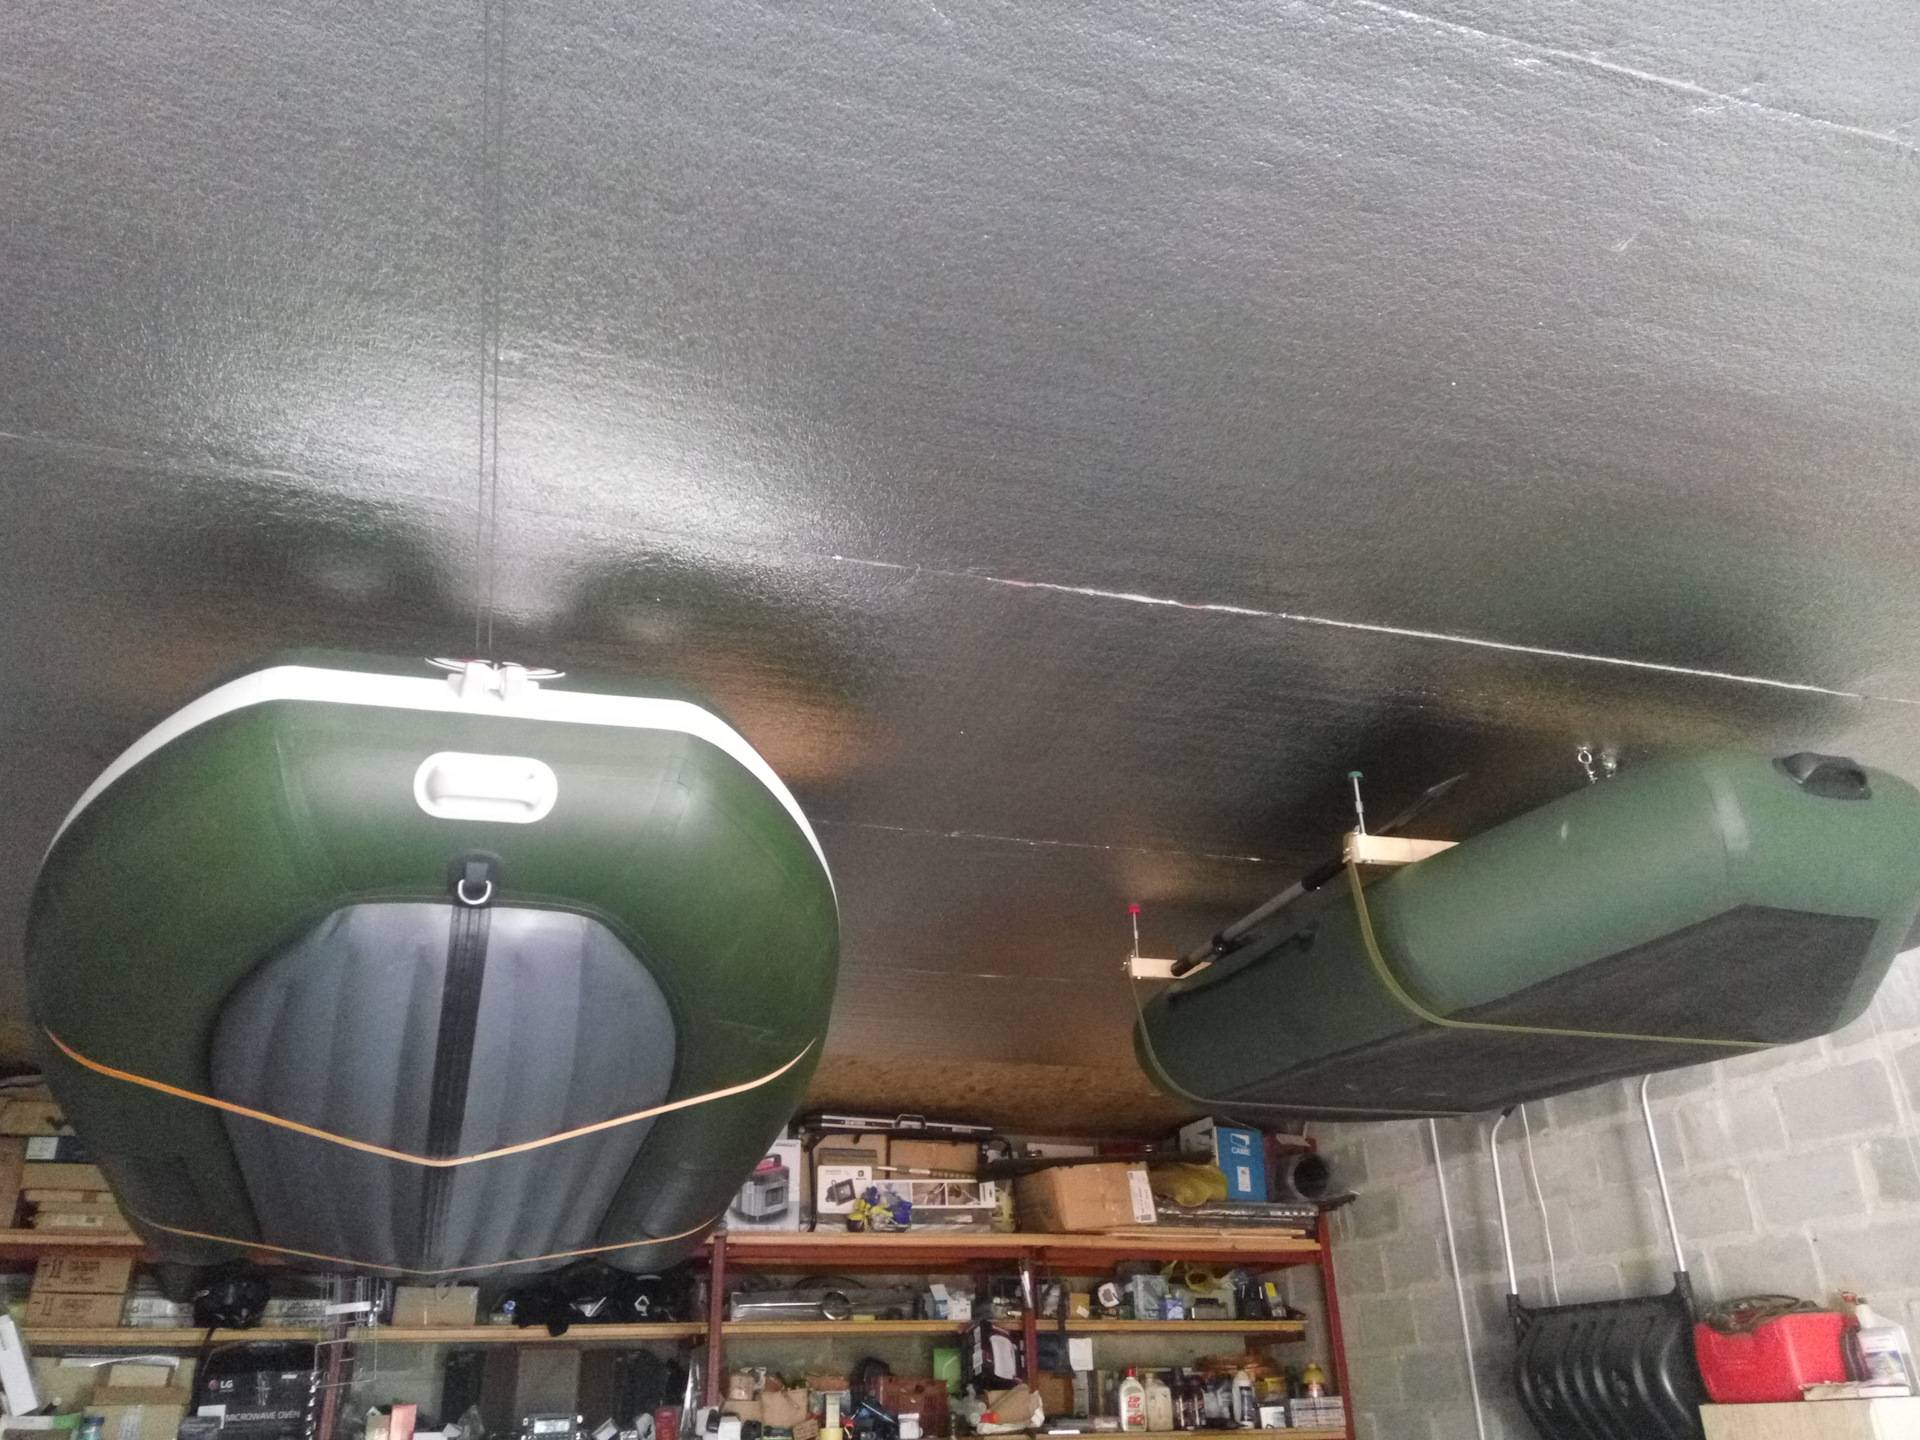 Правильное хранение лодки из пвх на морозе в гараже свернутой